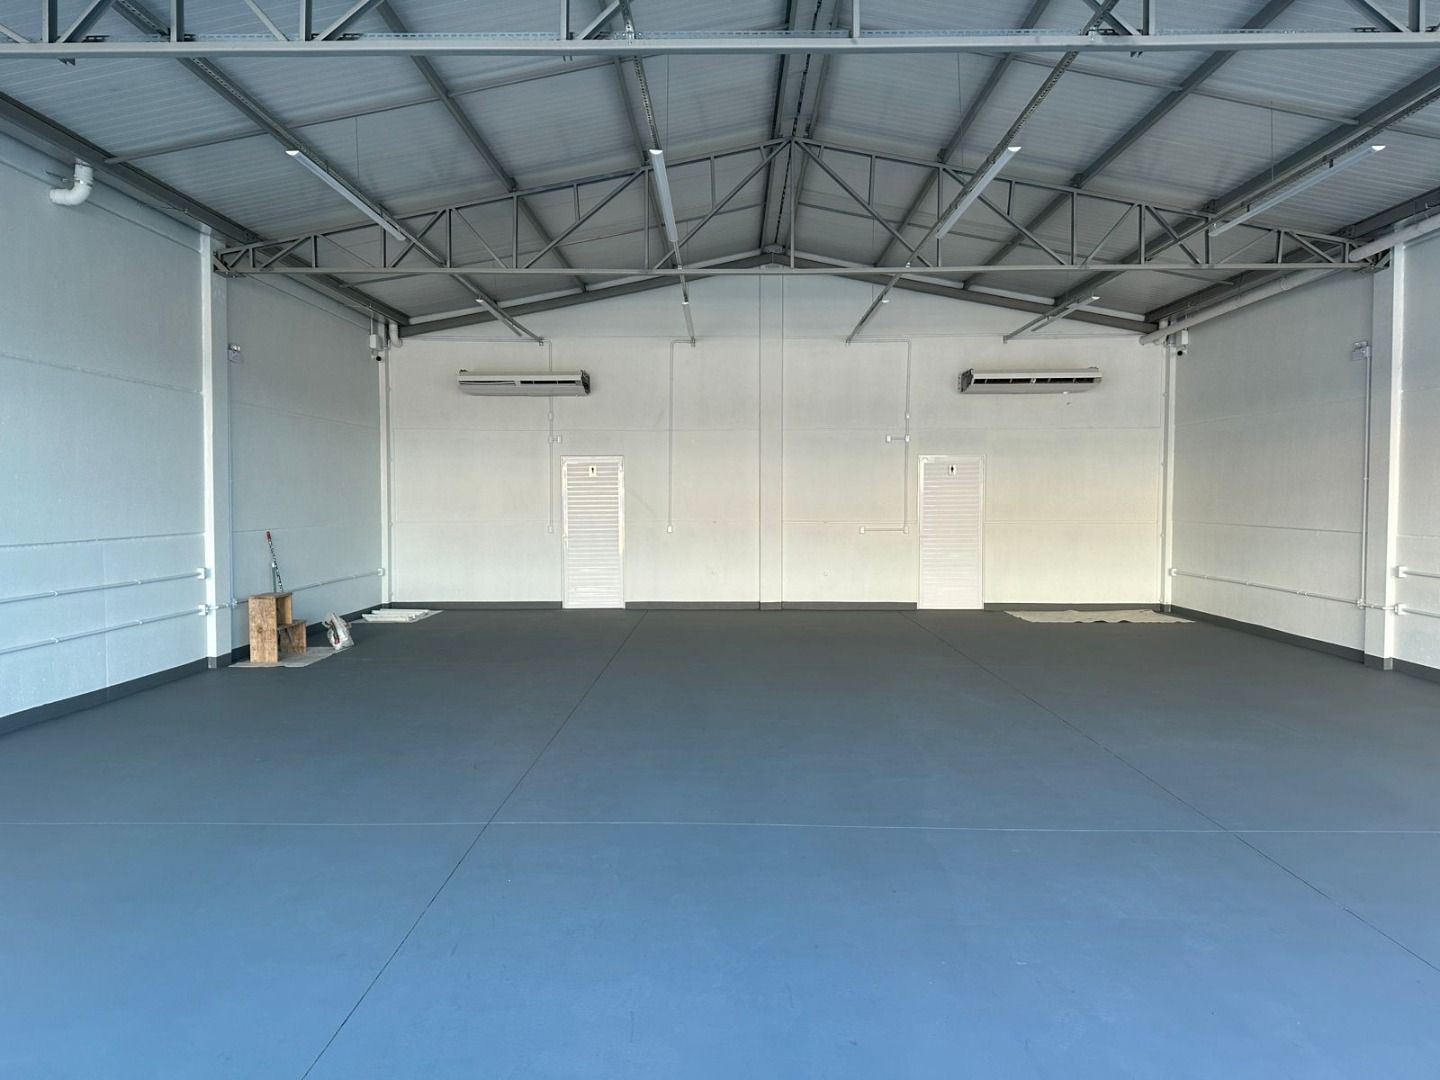 Depósito-Galpão, 160 m² - Foto 3